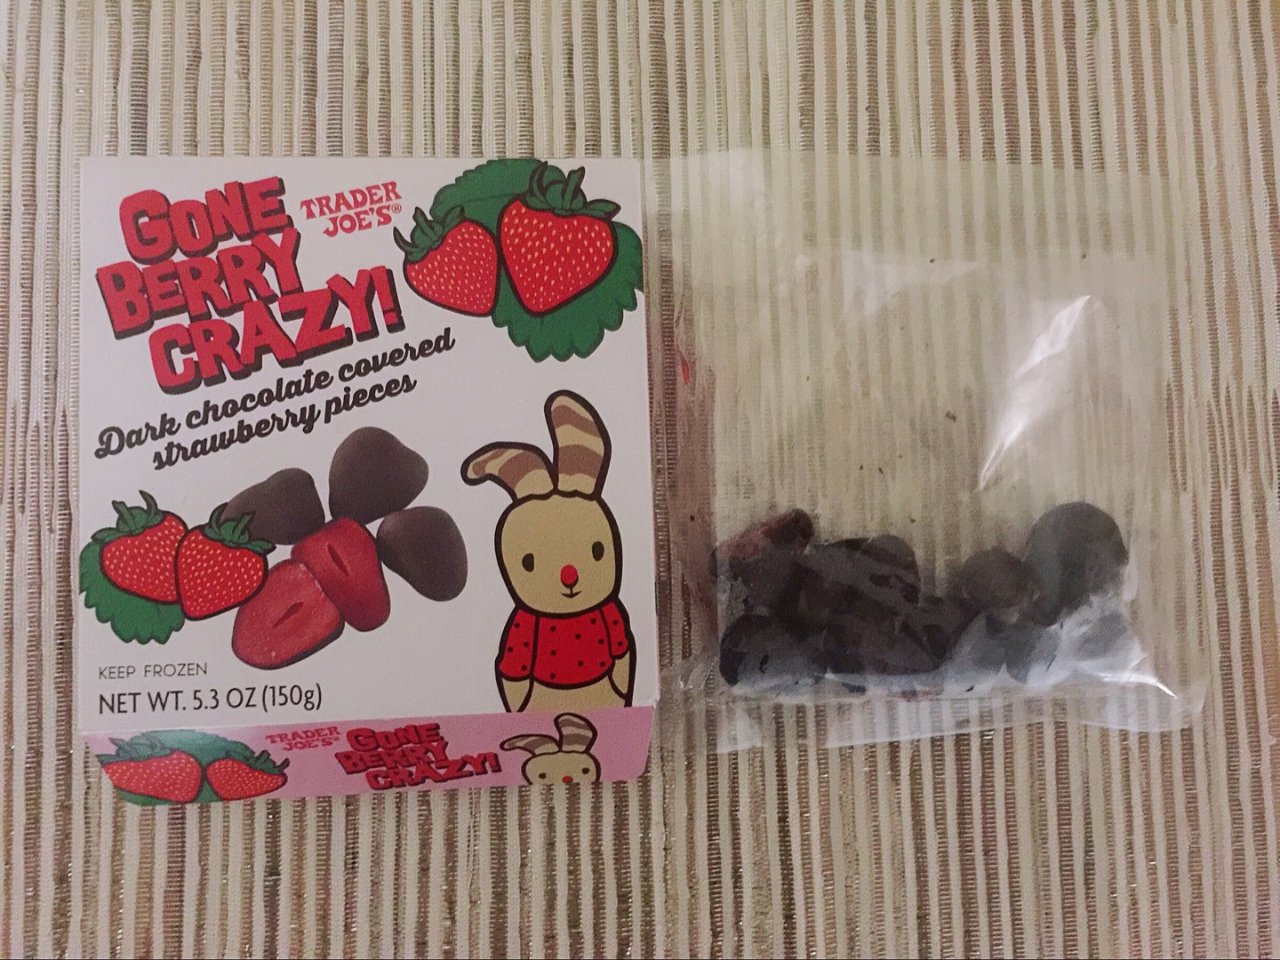 Dark Chocolate Covered Strawberry